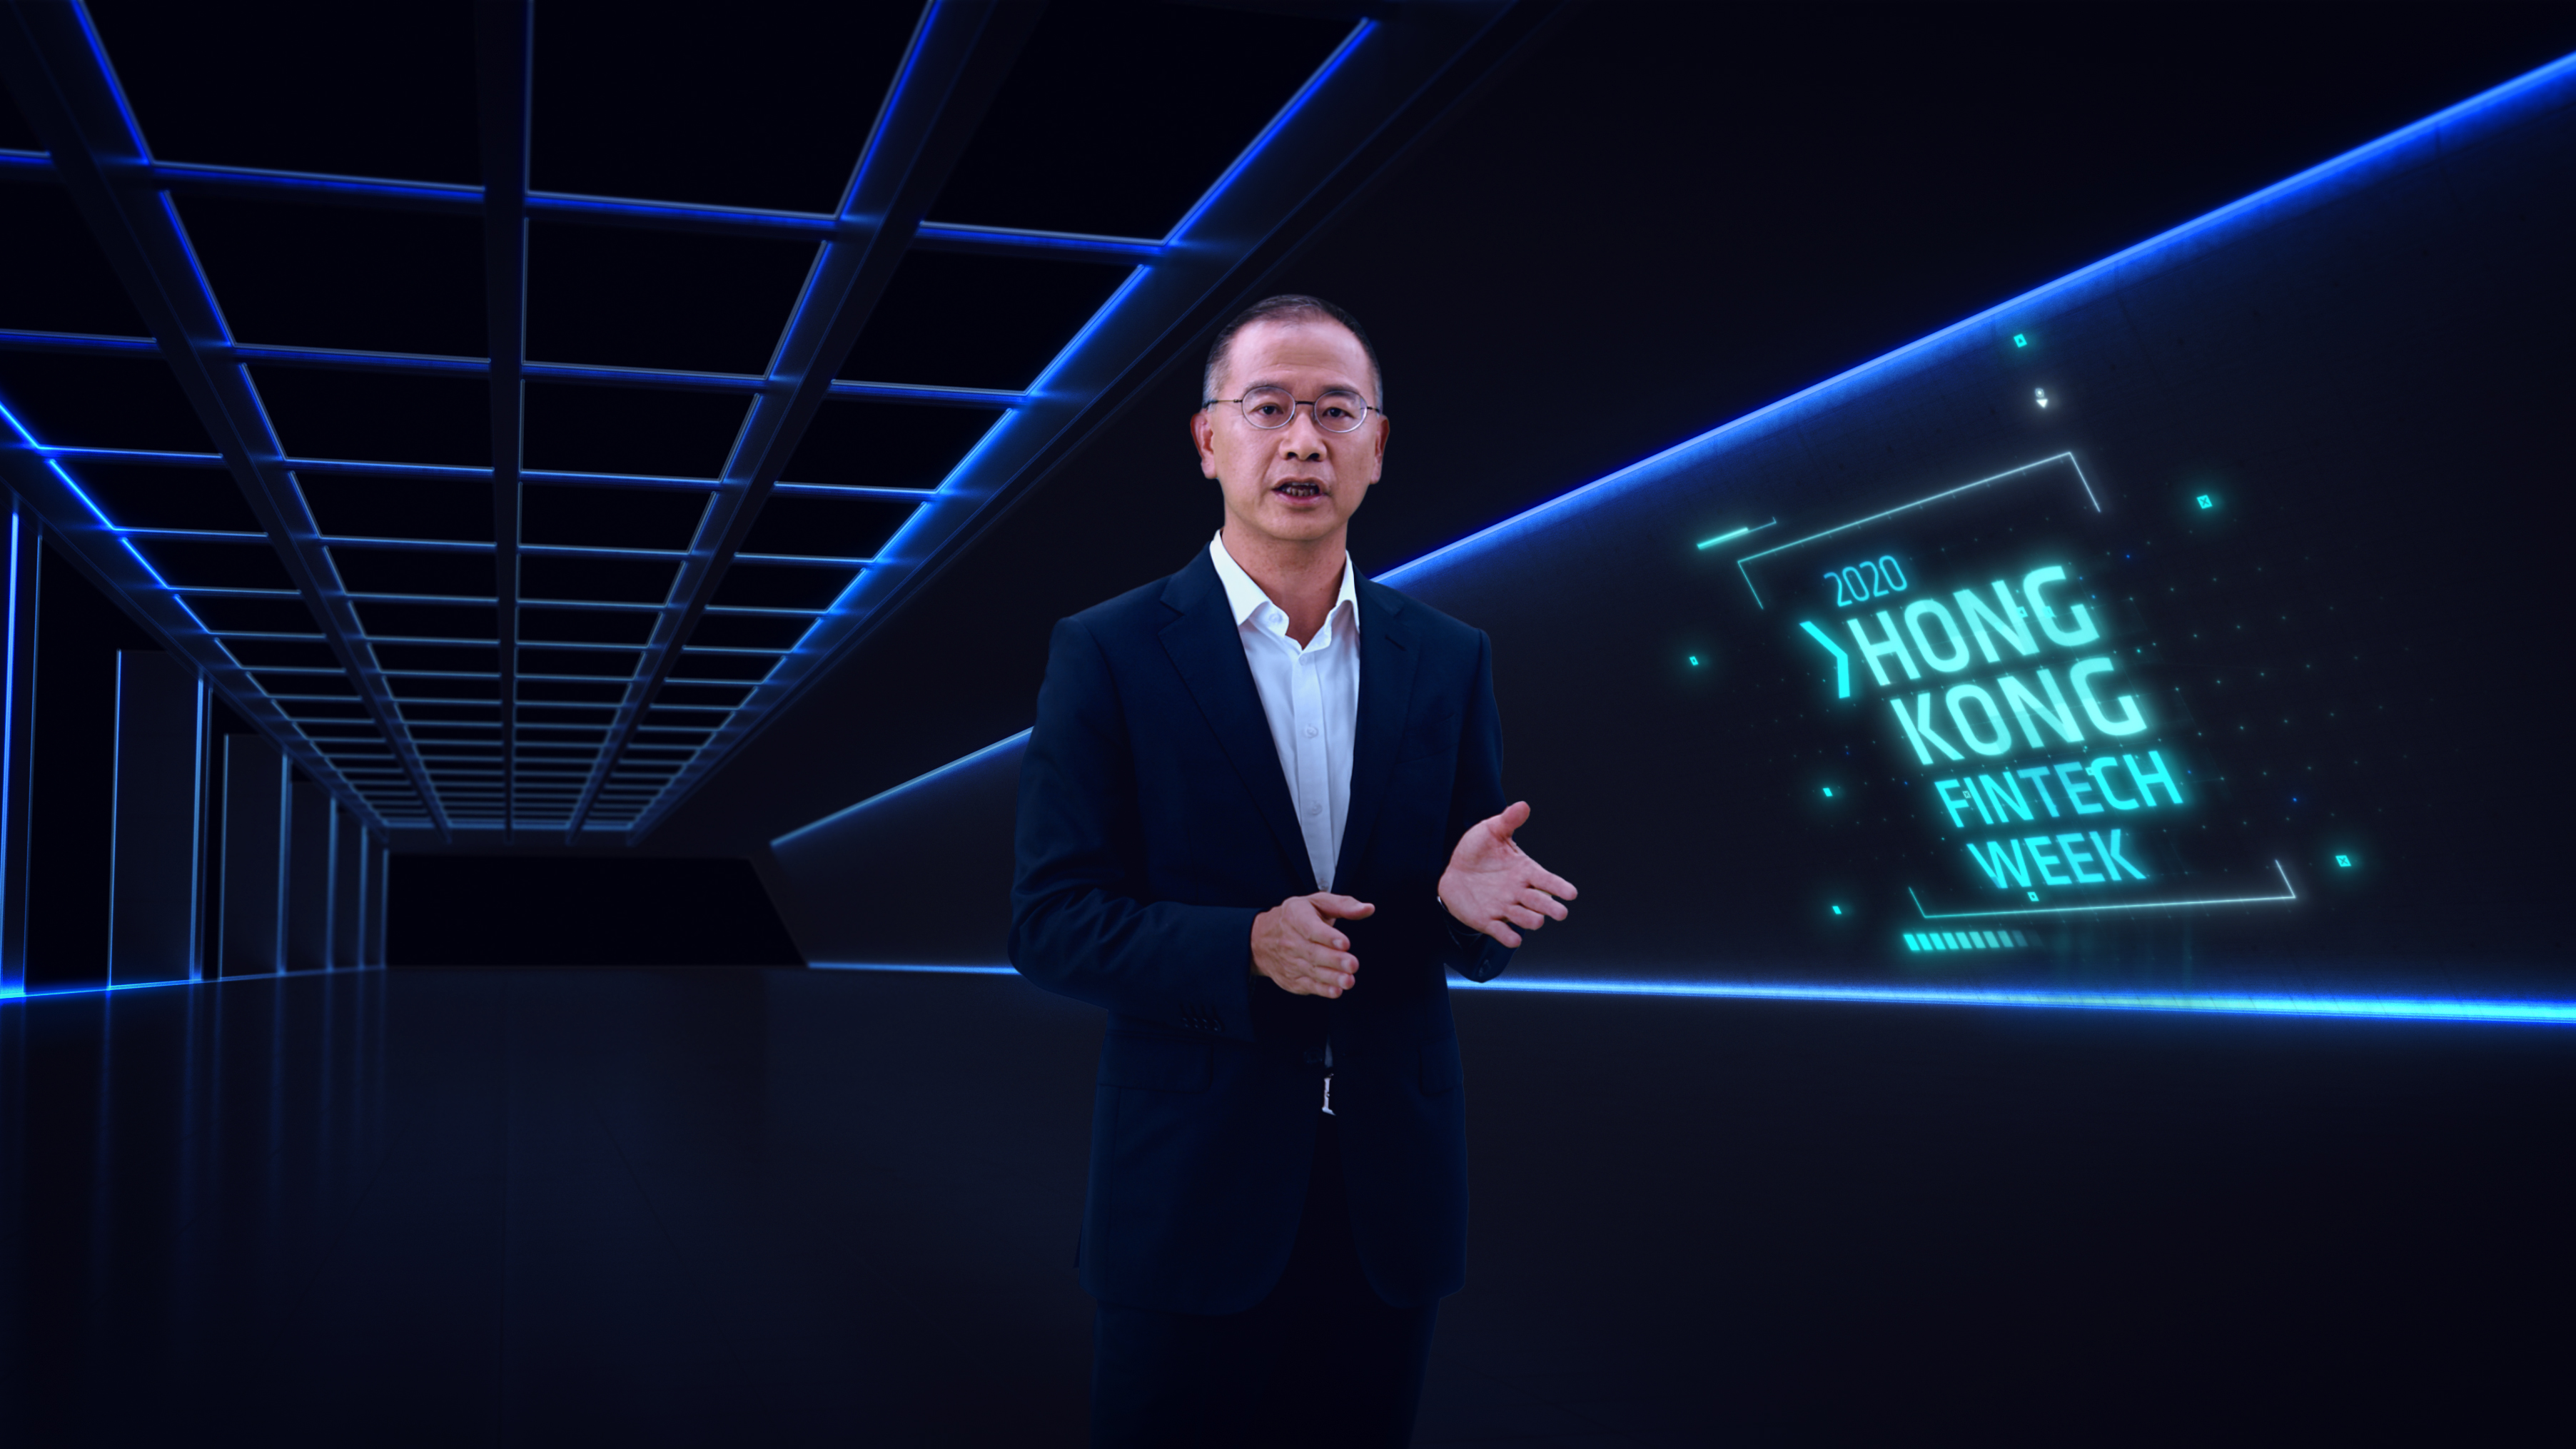 金管局总裁余伟文先生于线上进行的「香港金融科技周2020」发表开幕主题演讲，谈及香港未来金融科技策略。请按此观看相关影片。